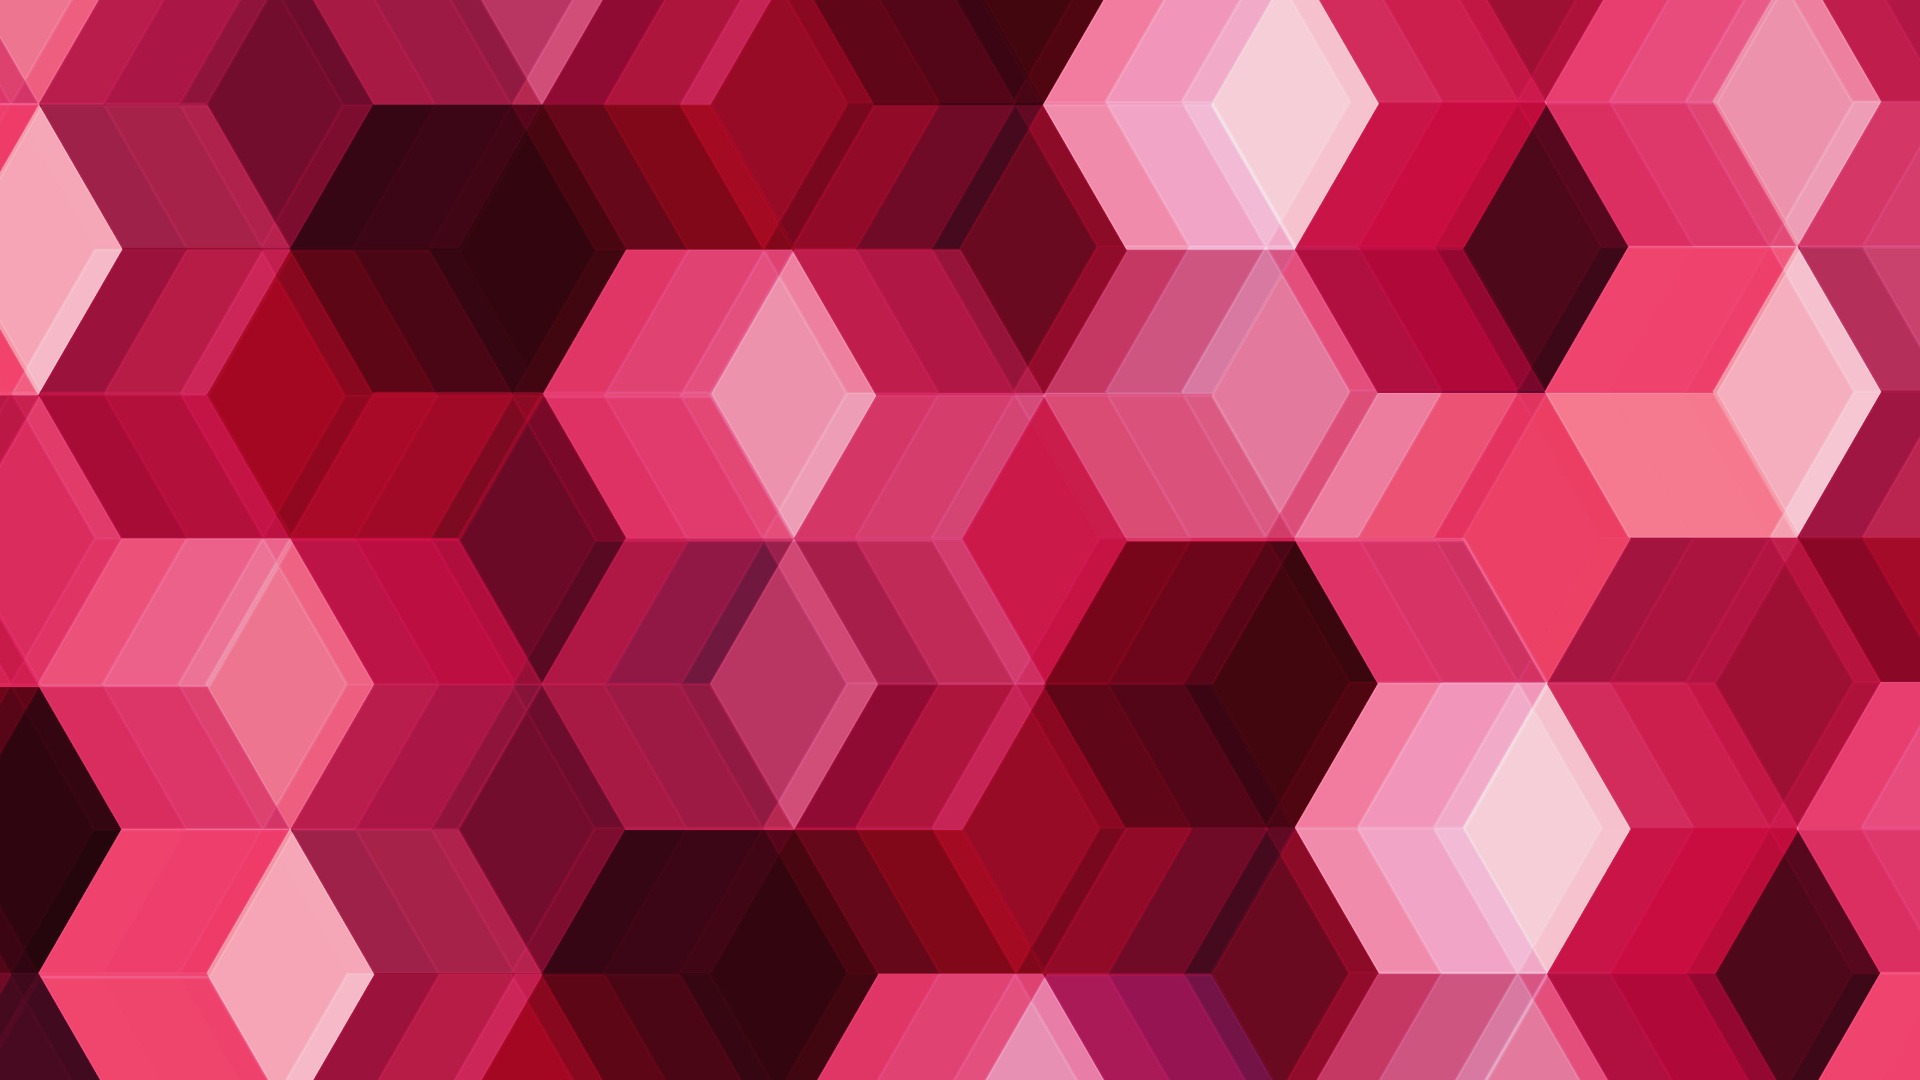 粉红色, 品红色, 对称, 立方体, 形状 壁纸 1920x1080 允许